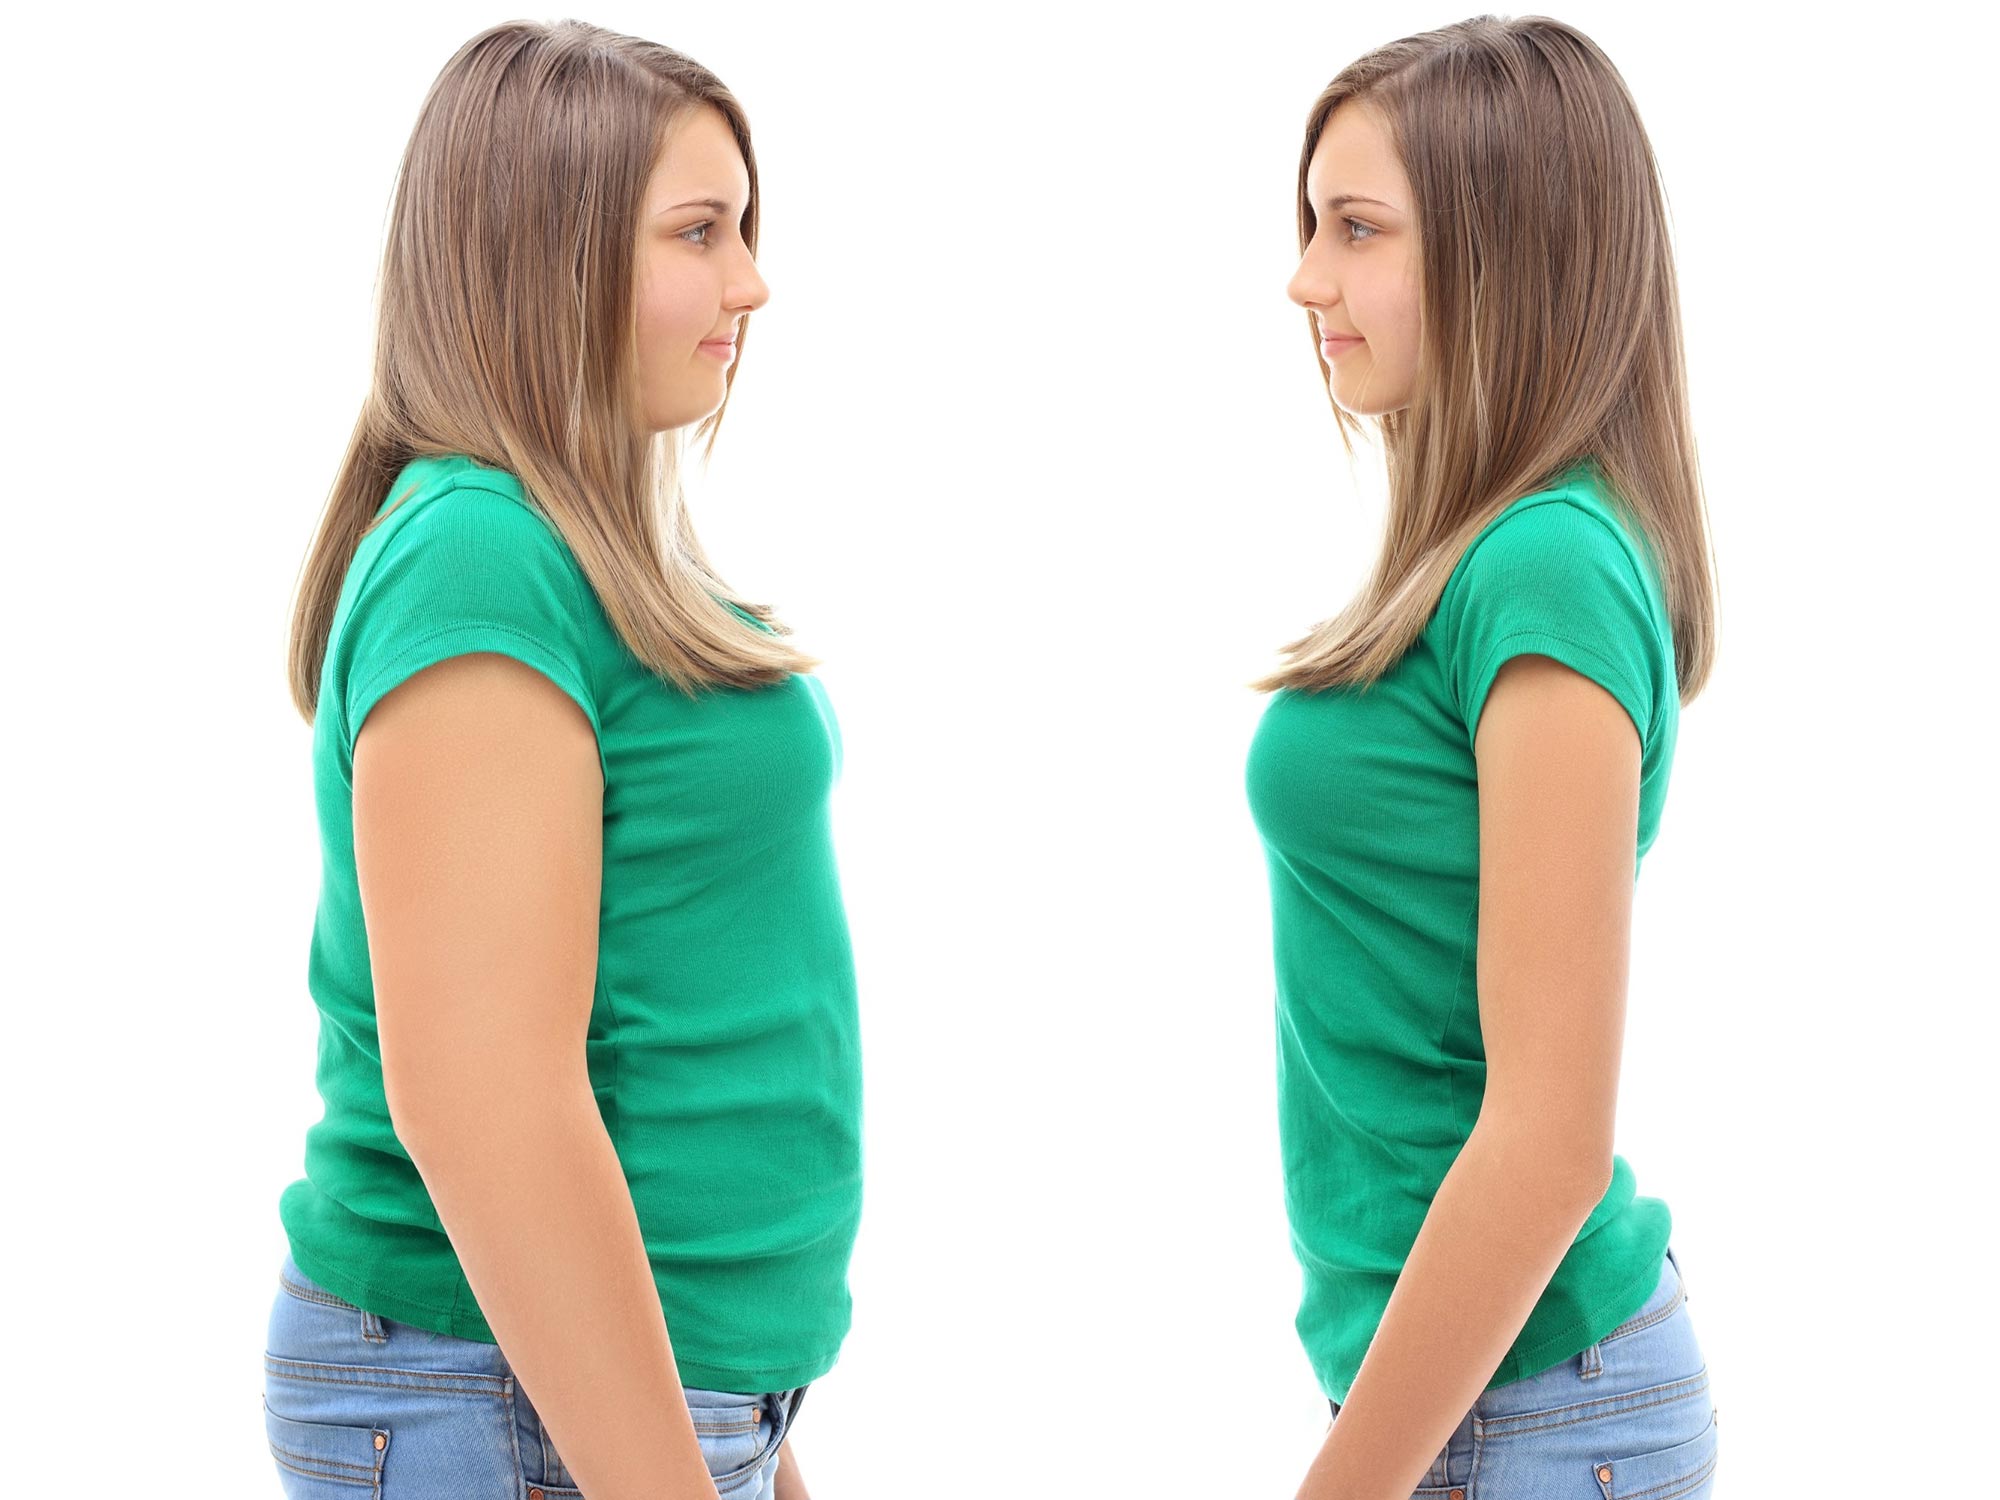 Studi Stanford mengungkapkan rahasia penurunan berat badan yang berkelanjutan: Perilaku dan biomarker terungkap